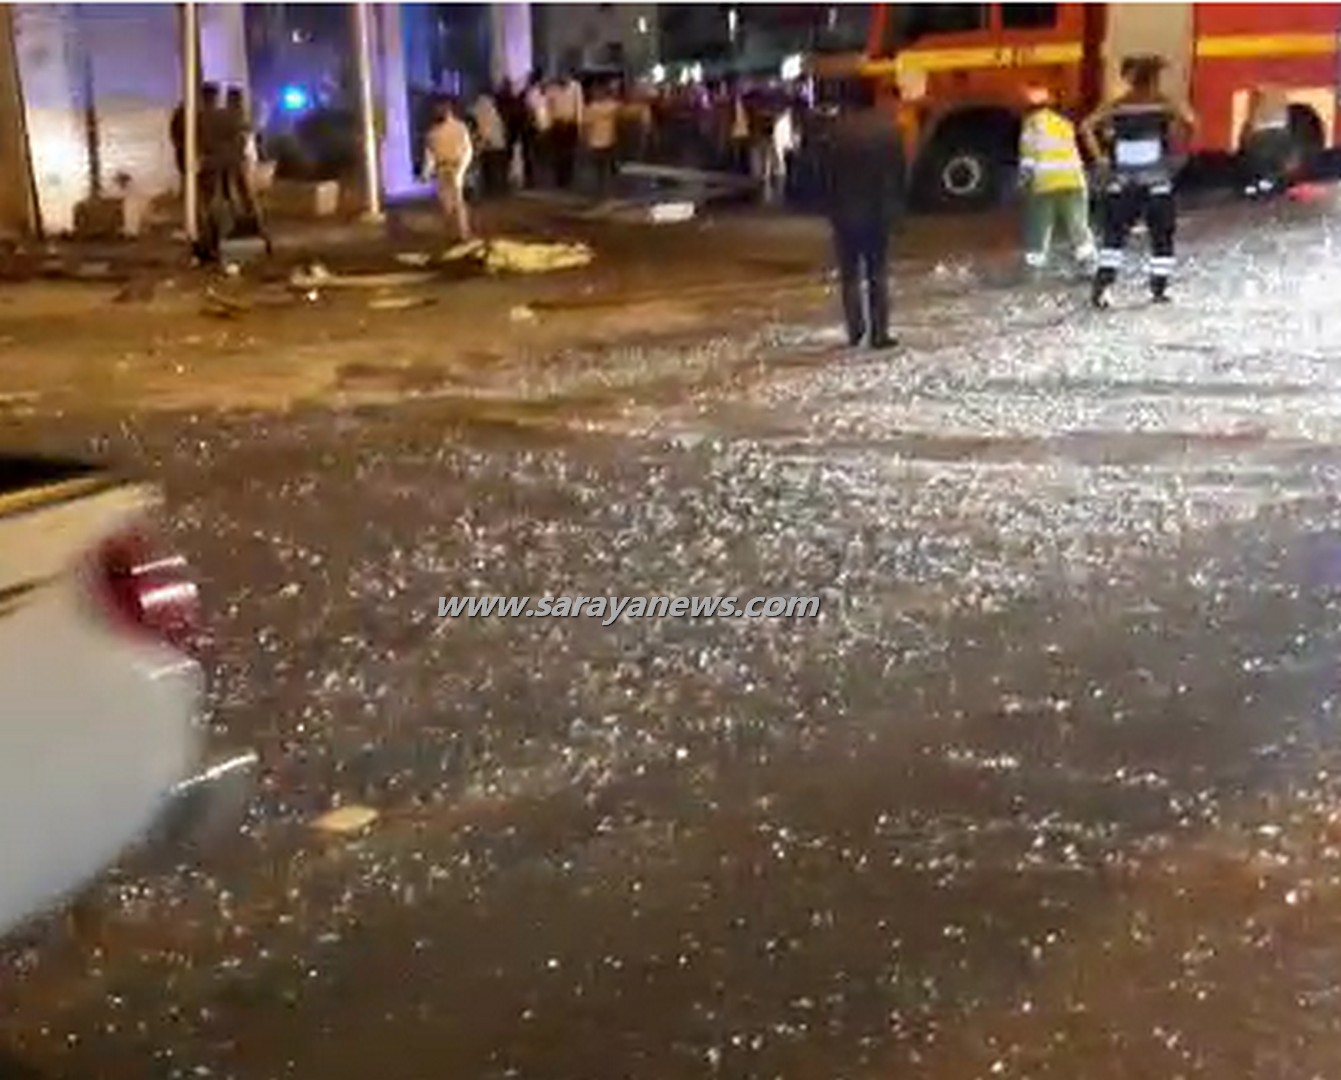 بالفيديو والصور  ..  انفجار اسطوانة غاز في مطعم بشارع المدينة المنورة 